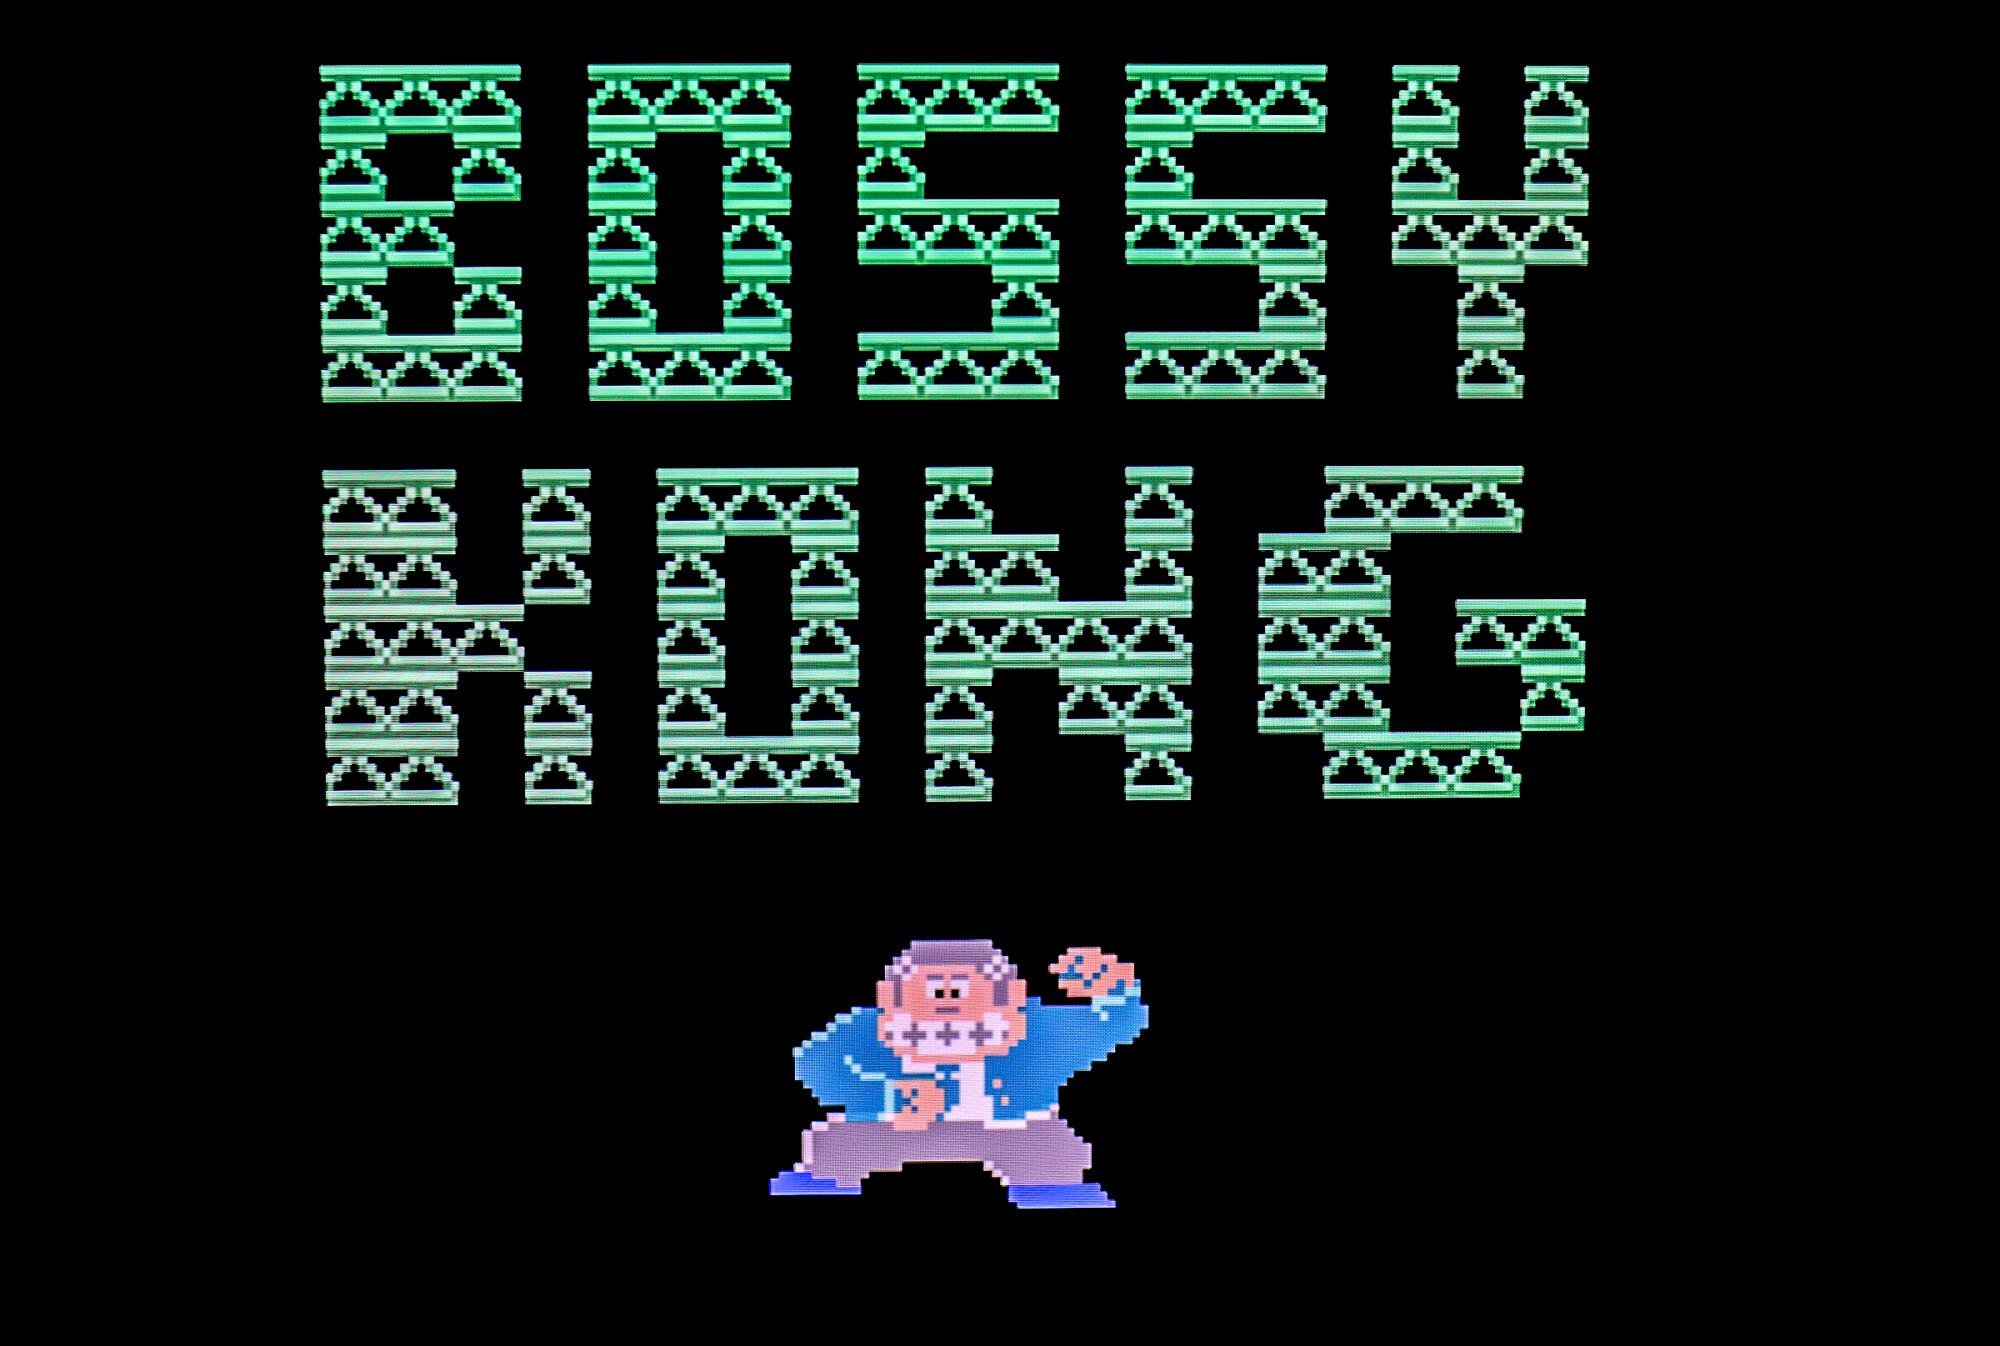 Der Titelbildschirm für "Bossy Kong," in Großbuchstaben dargestellt und mit einer kleinen Abbildung eines Affen im Anzug versehen.